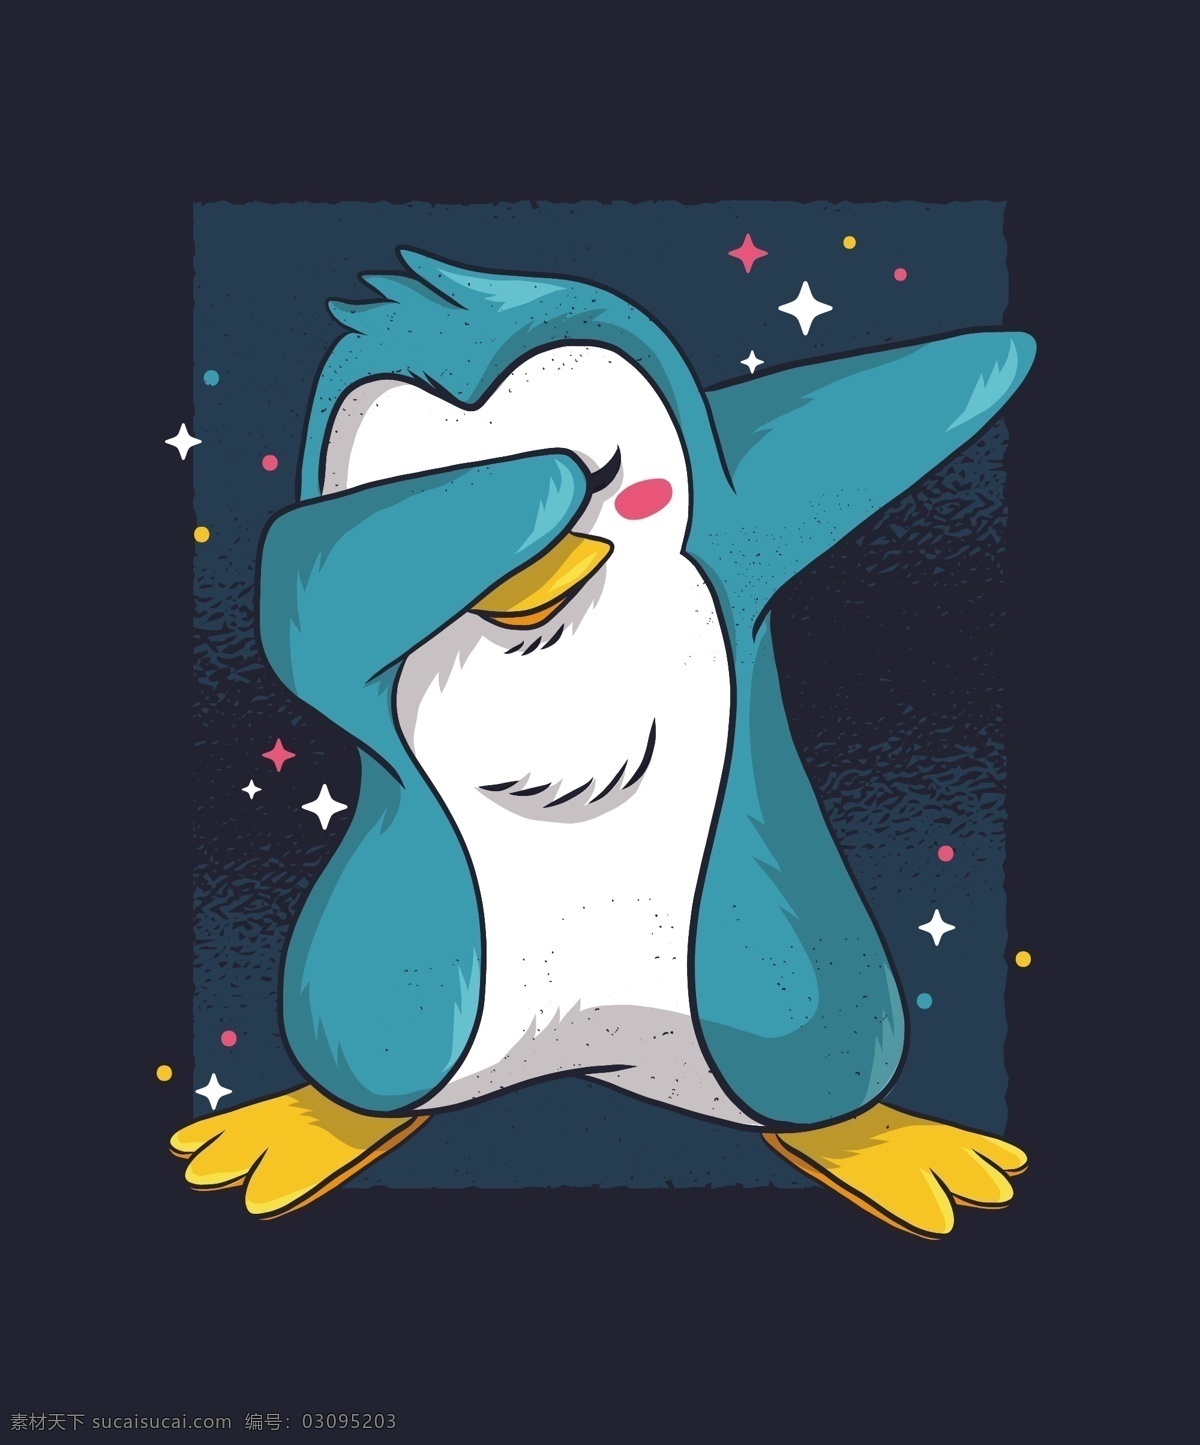 卡通企鹅 手绘企鹅 可爱企鹅 森系企鹅 动物 插画背景 企鹅图案包装 企鹅海报 卡通动物 矢量图